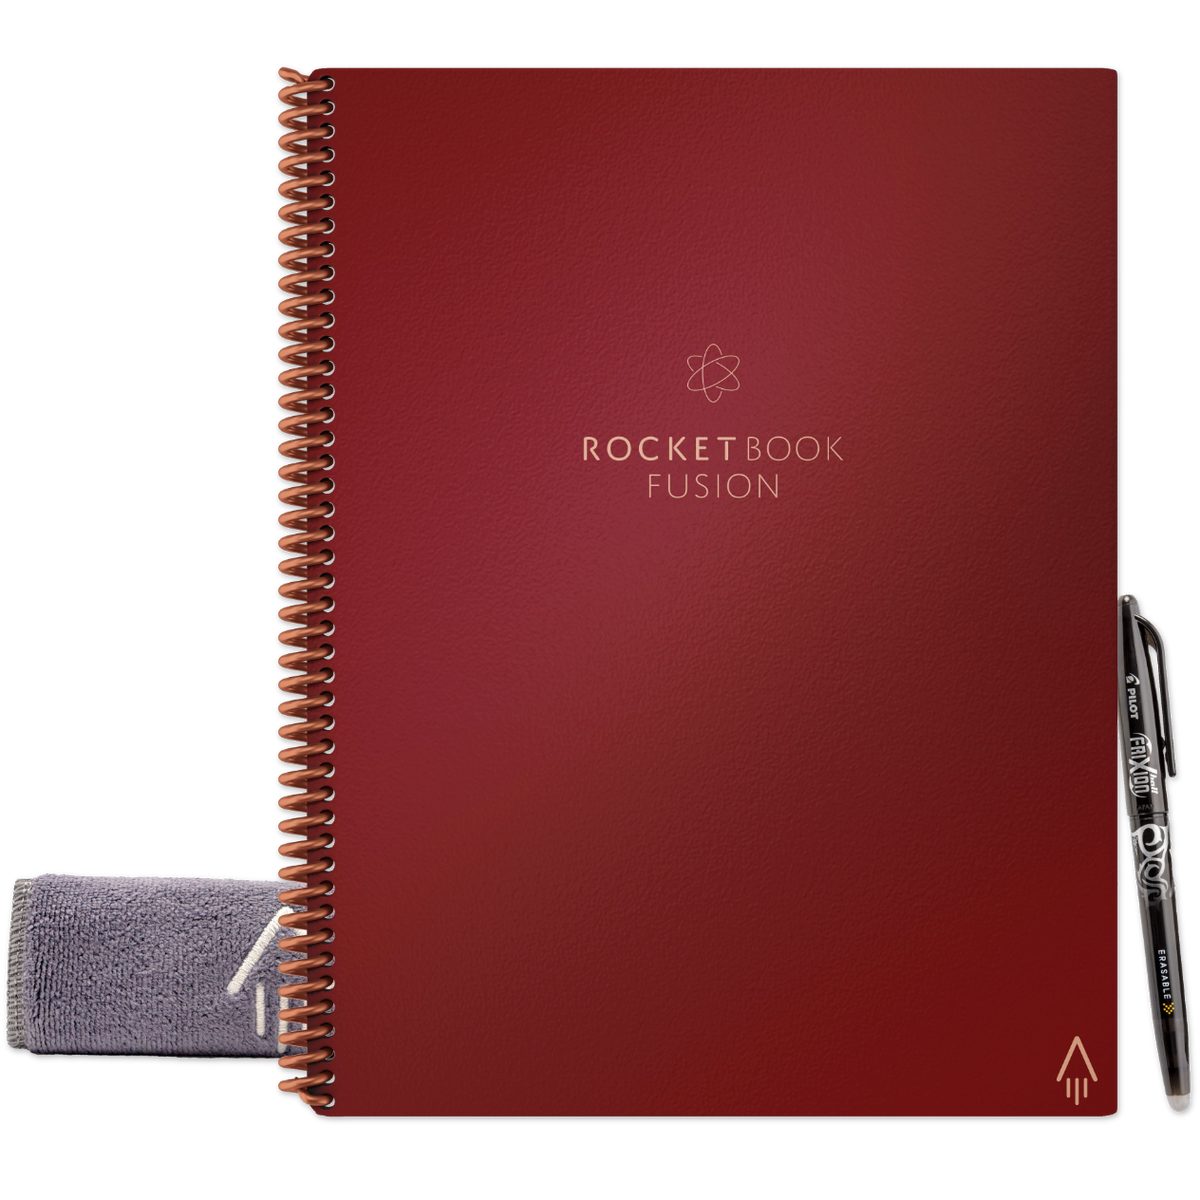 App-Anbindung - Everlast Rocketbook Notiz- Book Tagging Scarlet Sky, und und Skizzenbuch FUSION Symbol Rocket Notizbuch mit